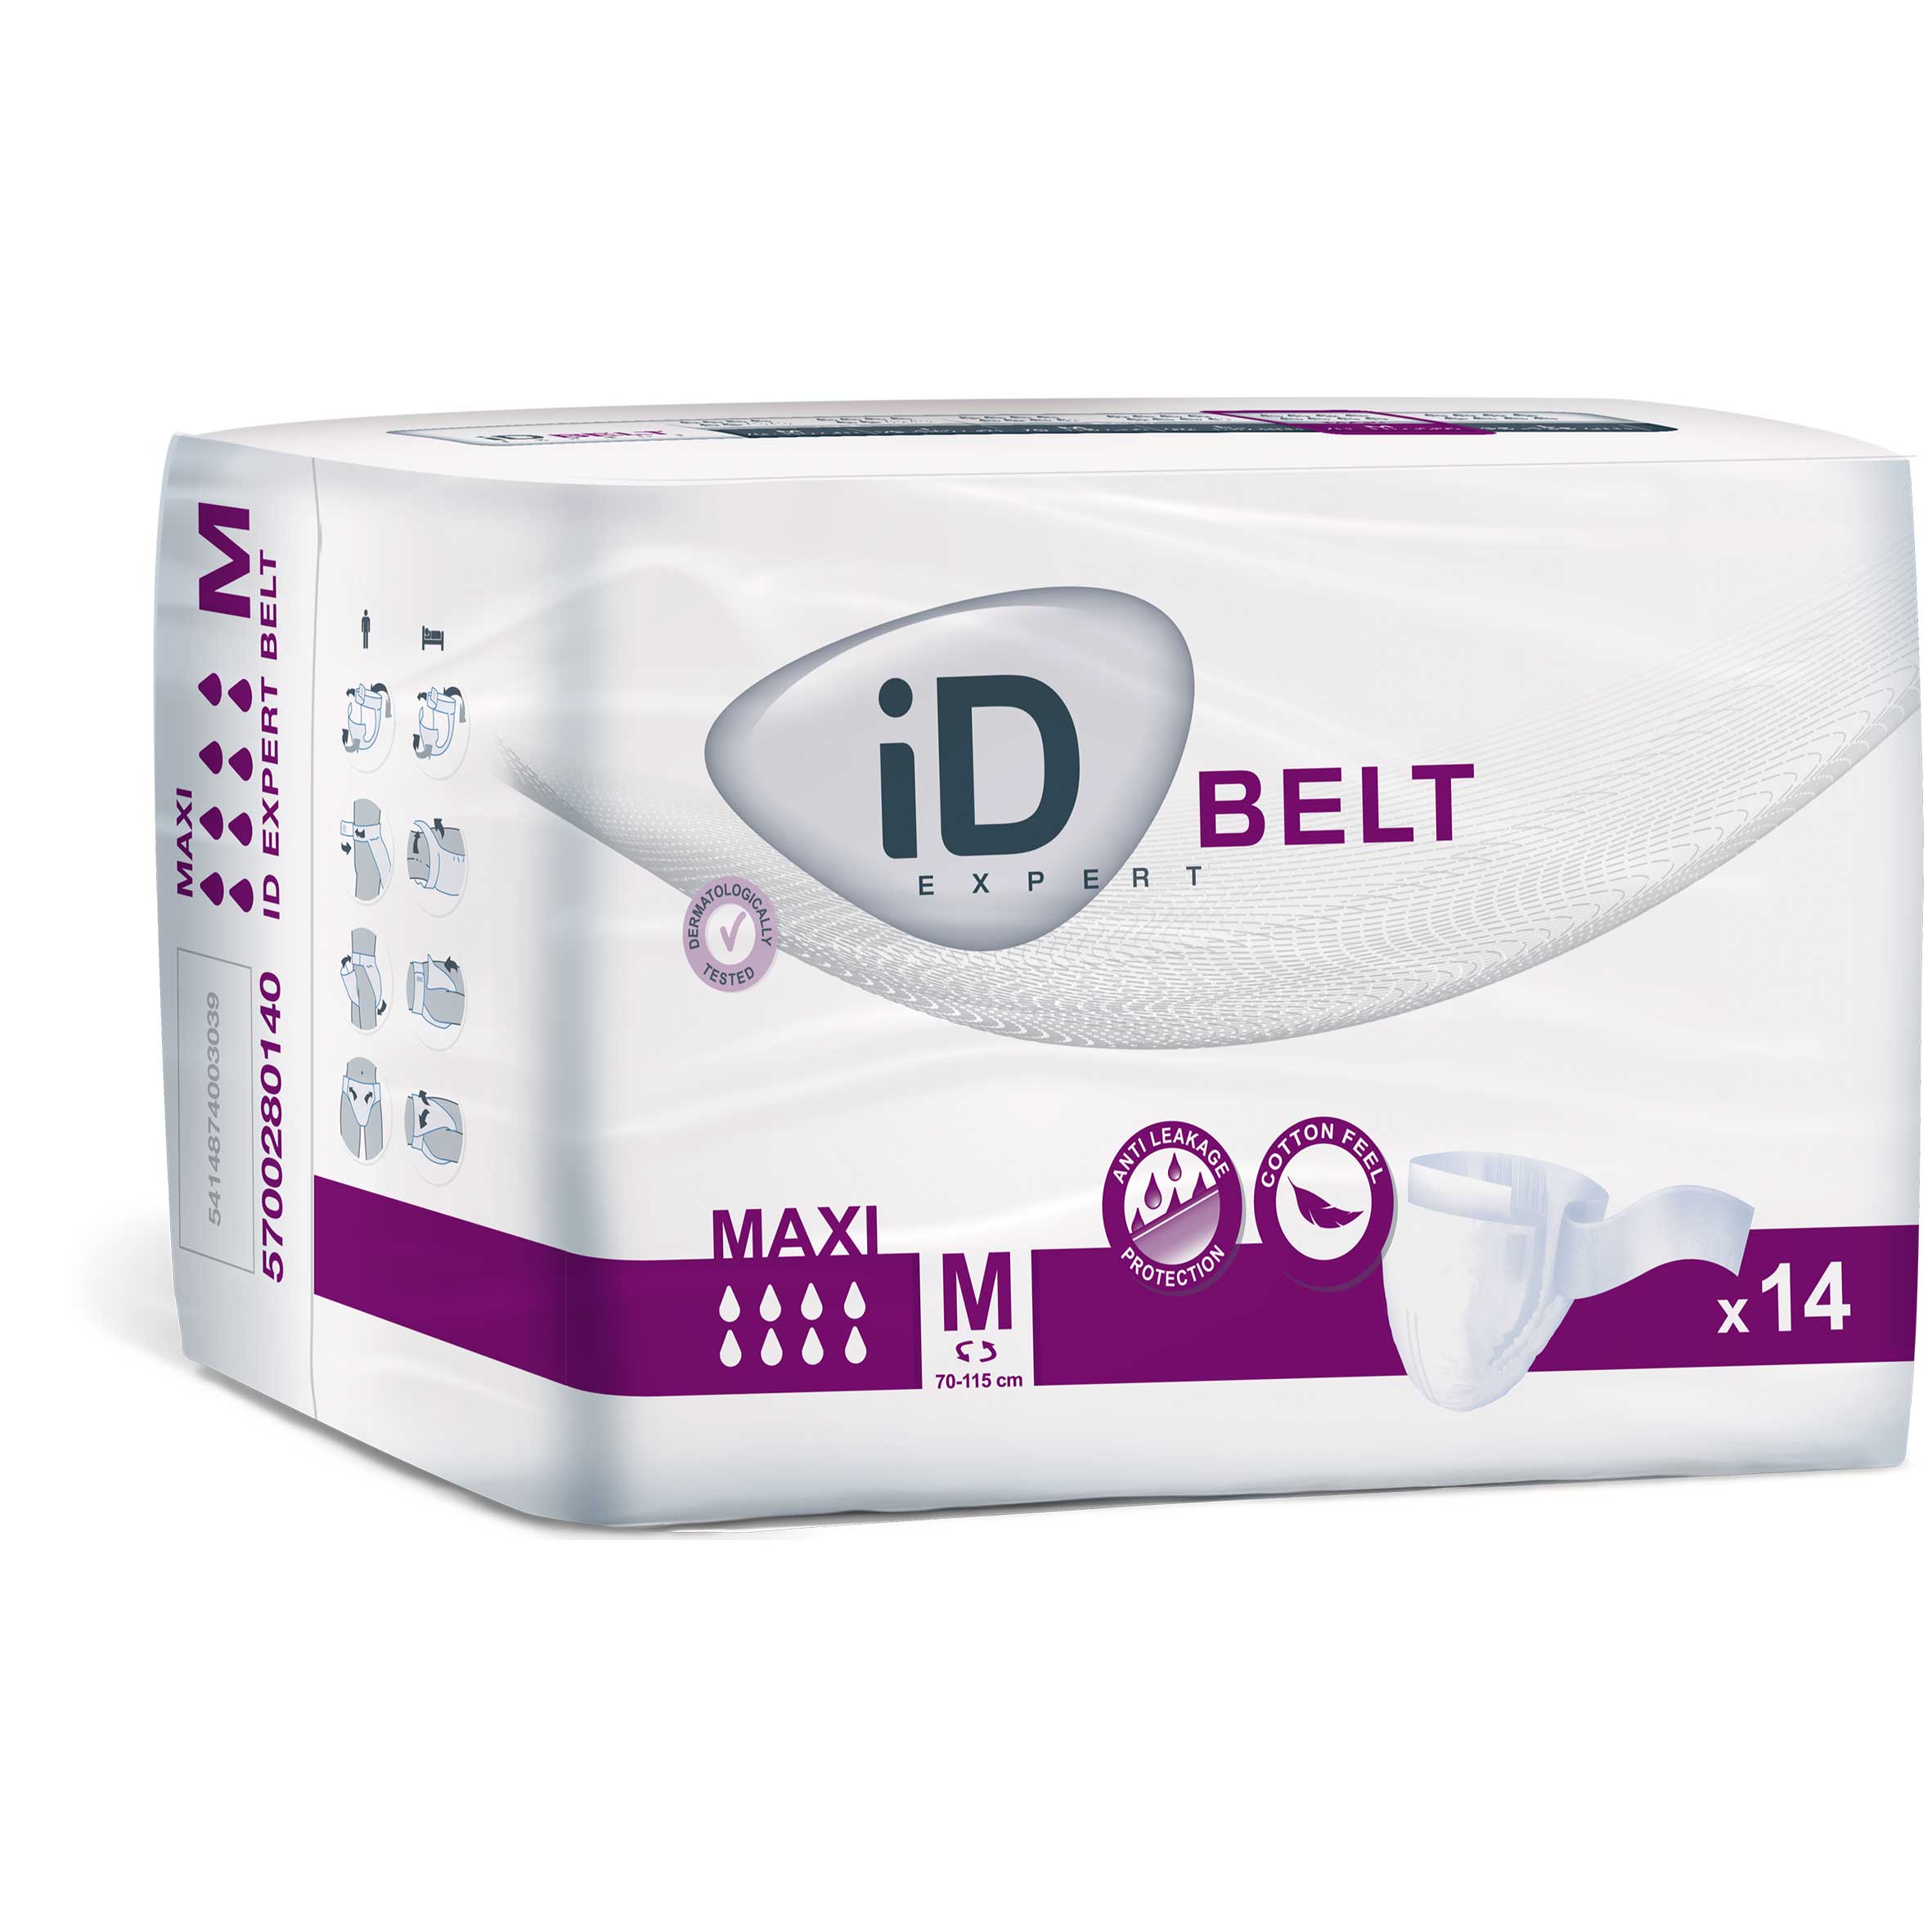 iD Expert Belt - Medium Maxi